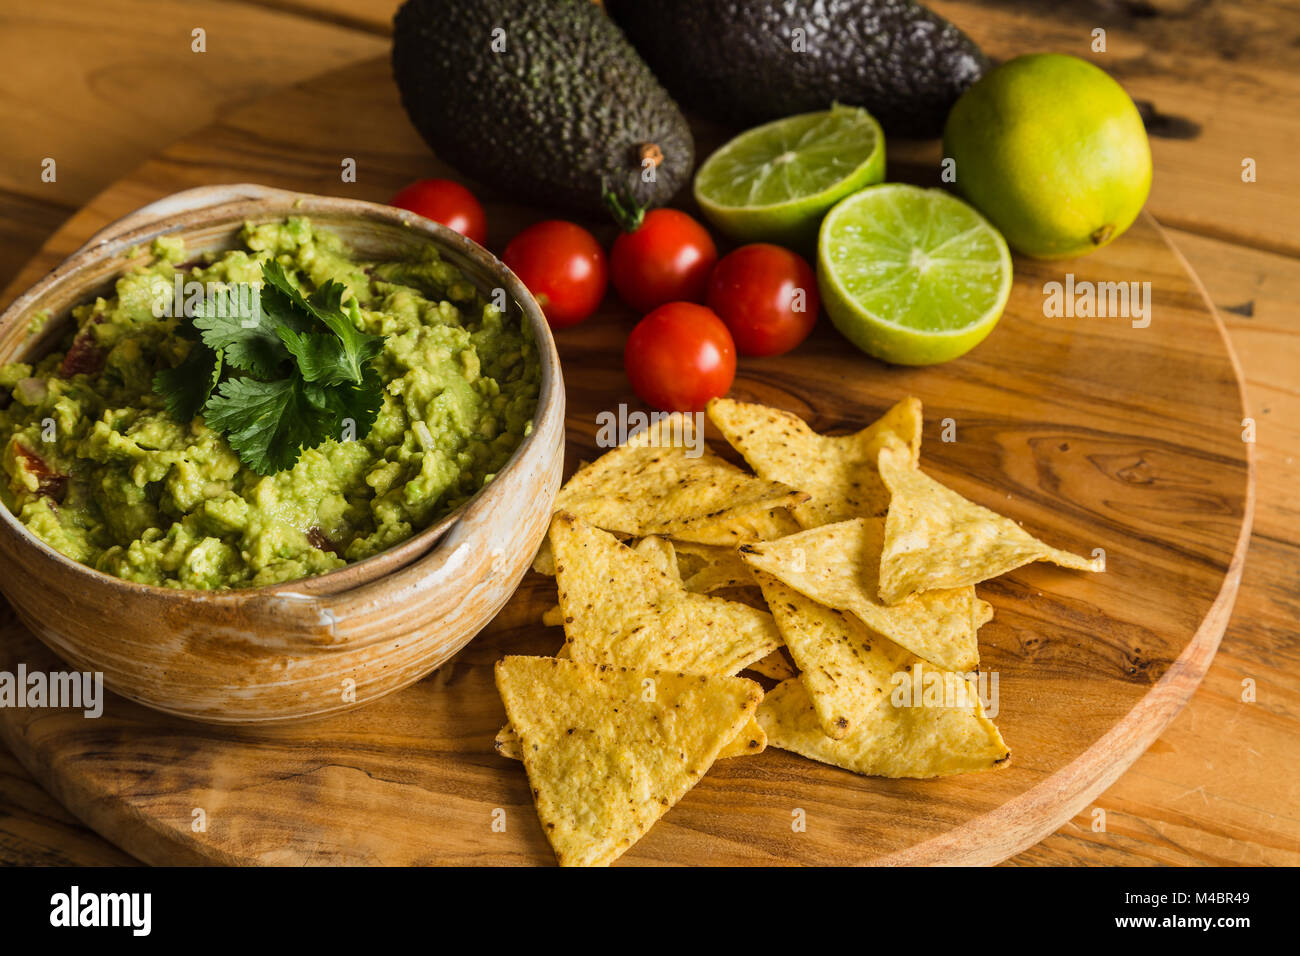 La vaschetta del guacamole dip con gli avocadi tortilla chips di pomodori ciliegini e limes su un tagliere Foto Stock